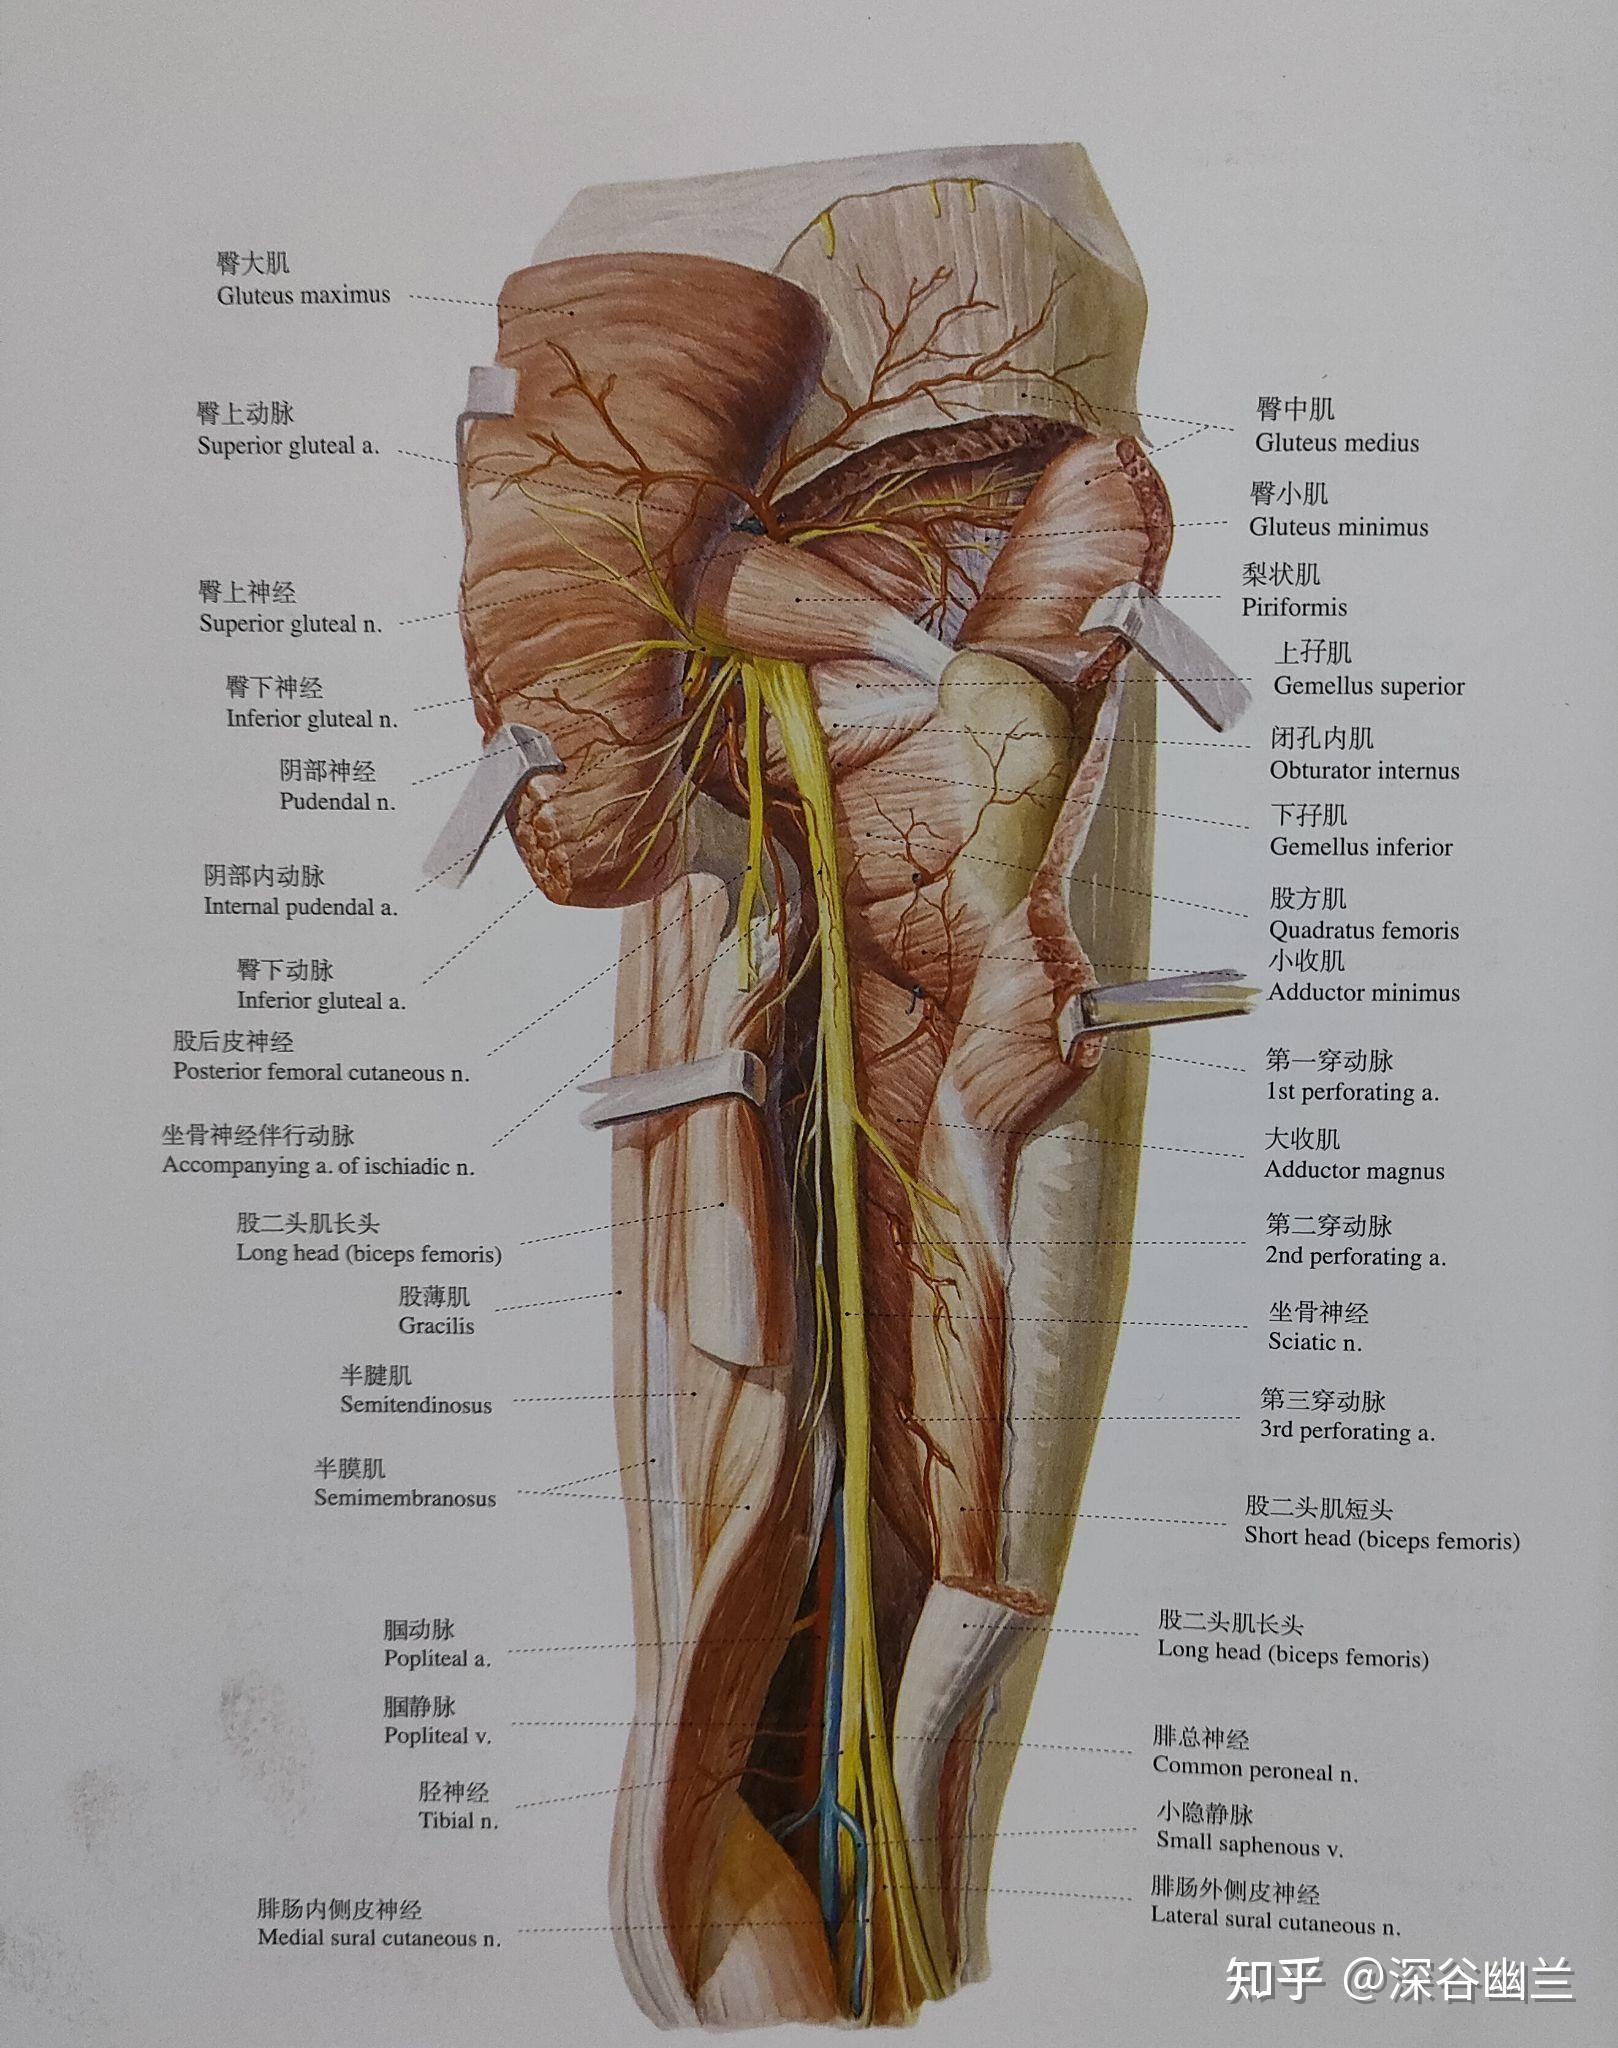 在股二头肌腱内侧;有膝上外侧动,静脉,布有股后皮神经,正当腓总神经处